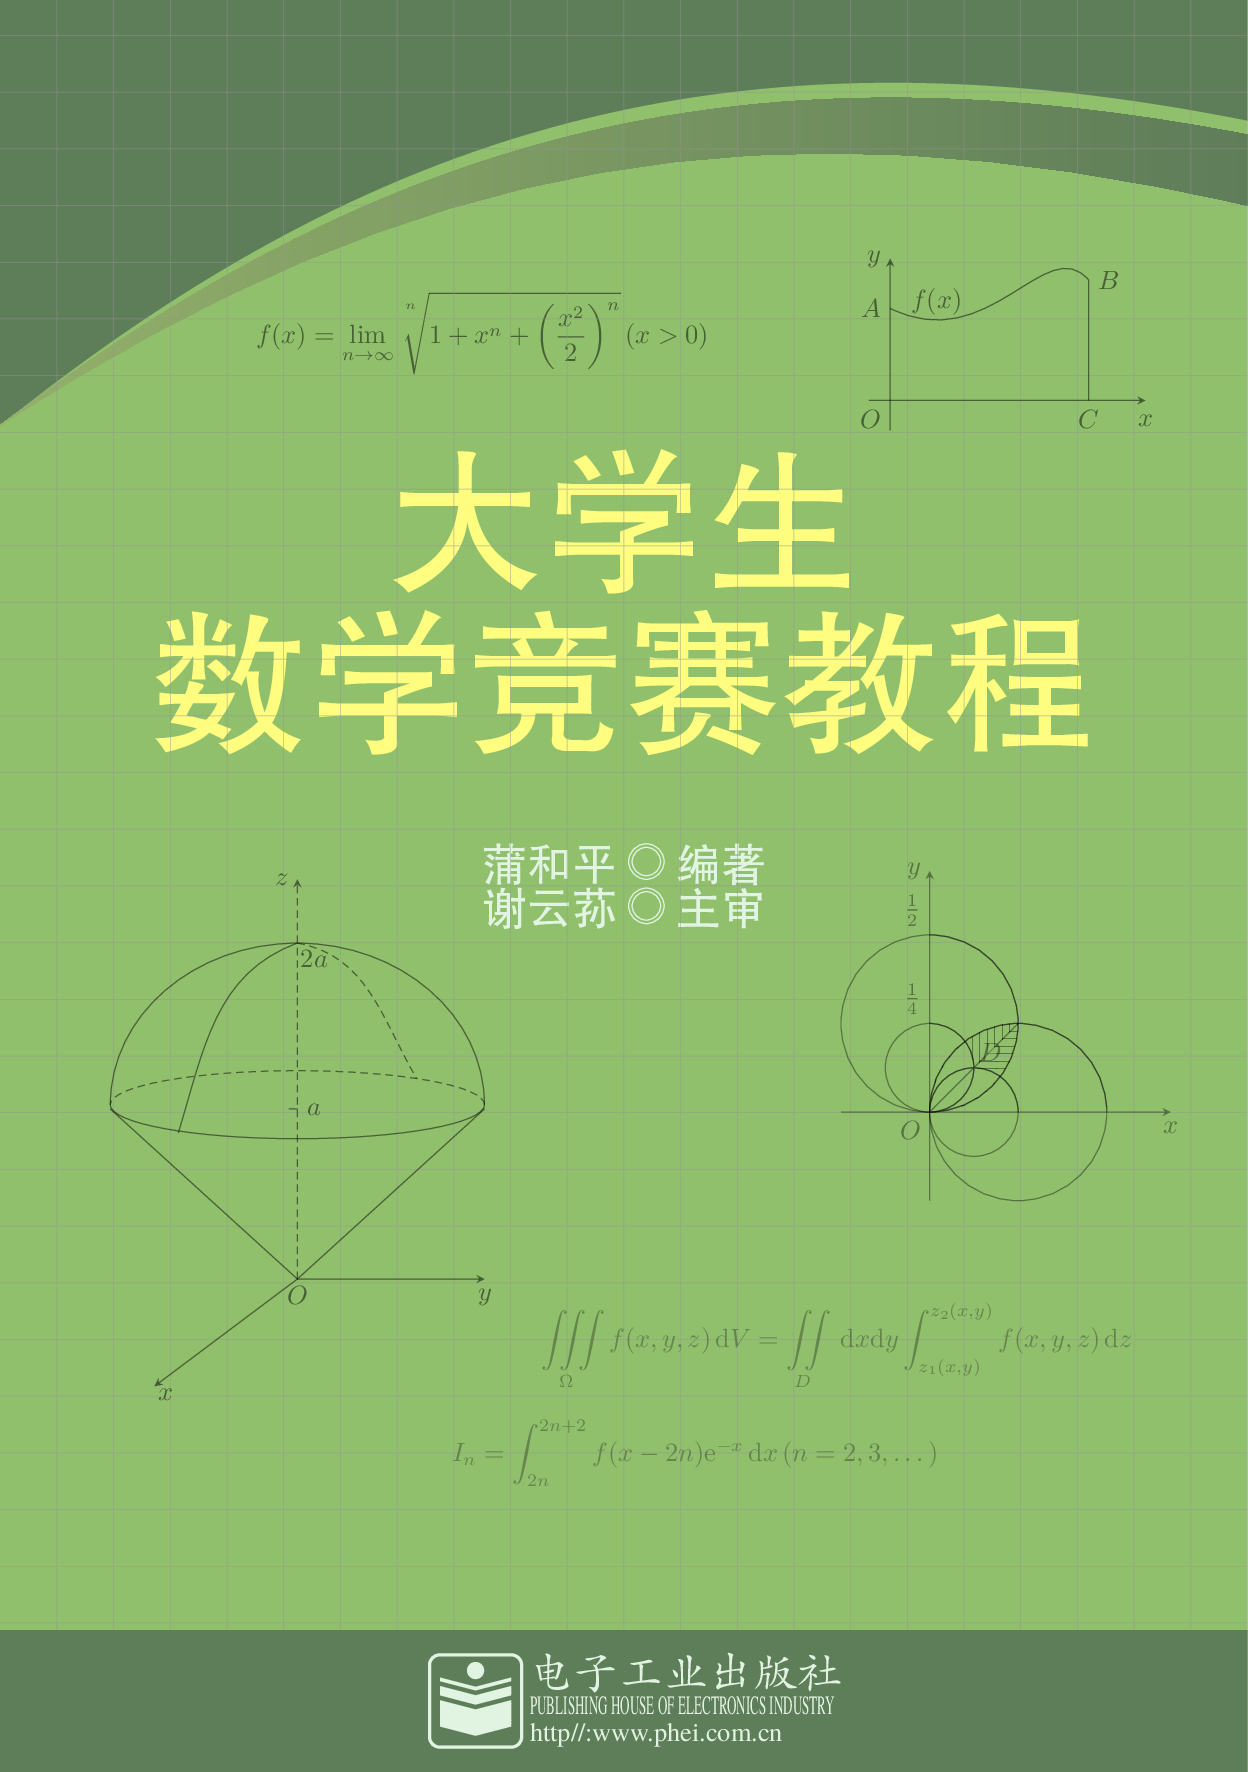 用 TiKZ 重新设计蒲和平大学生数学竞赛教程封面 - 向老师